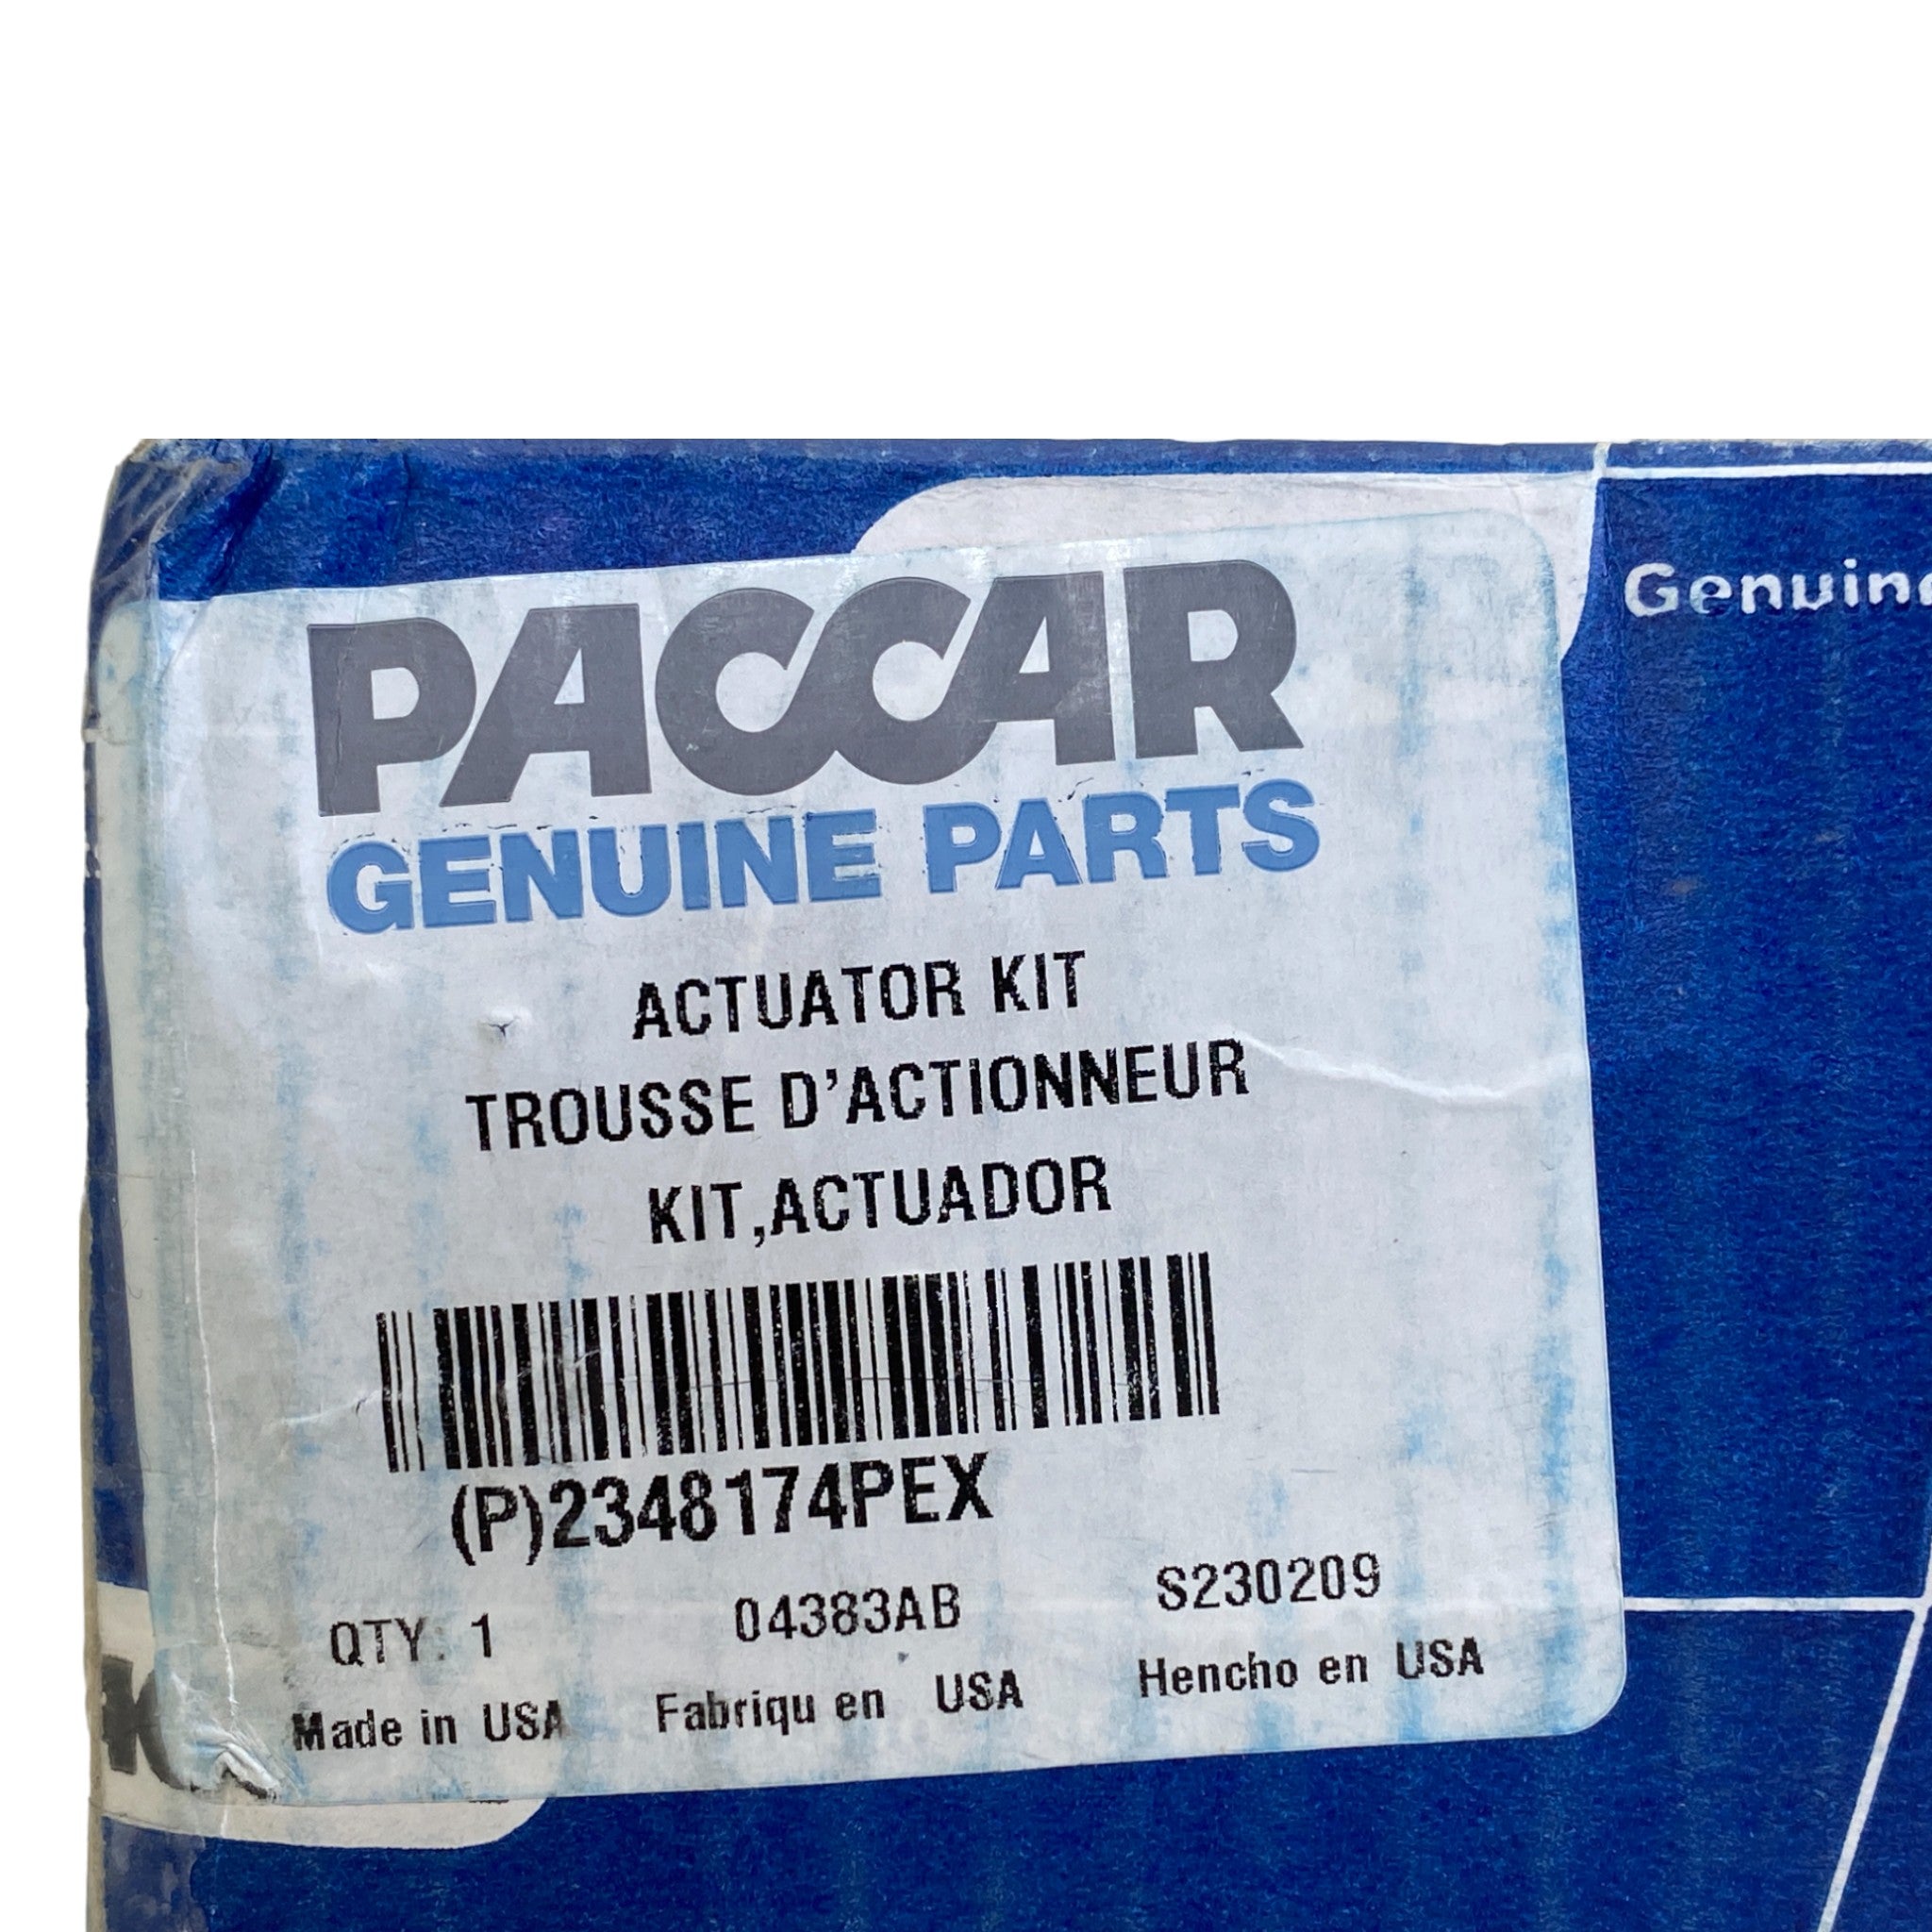 2348174Pex Genuine Paccar Actuator Mx-11/Mx-13 He400